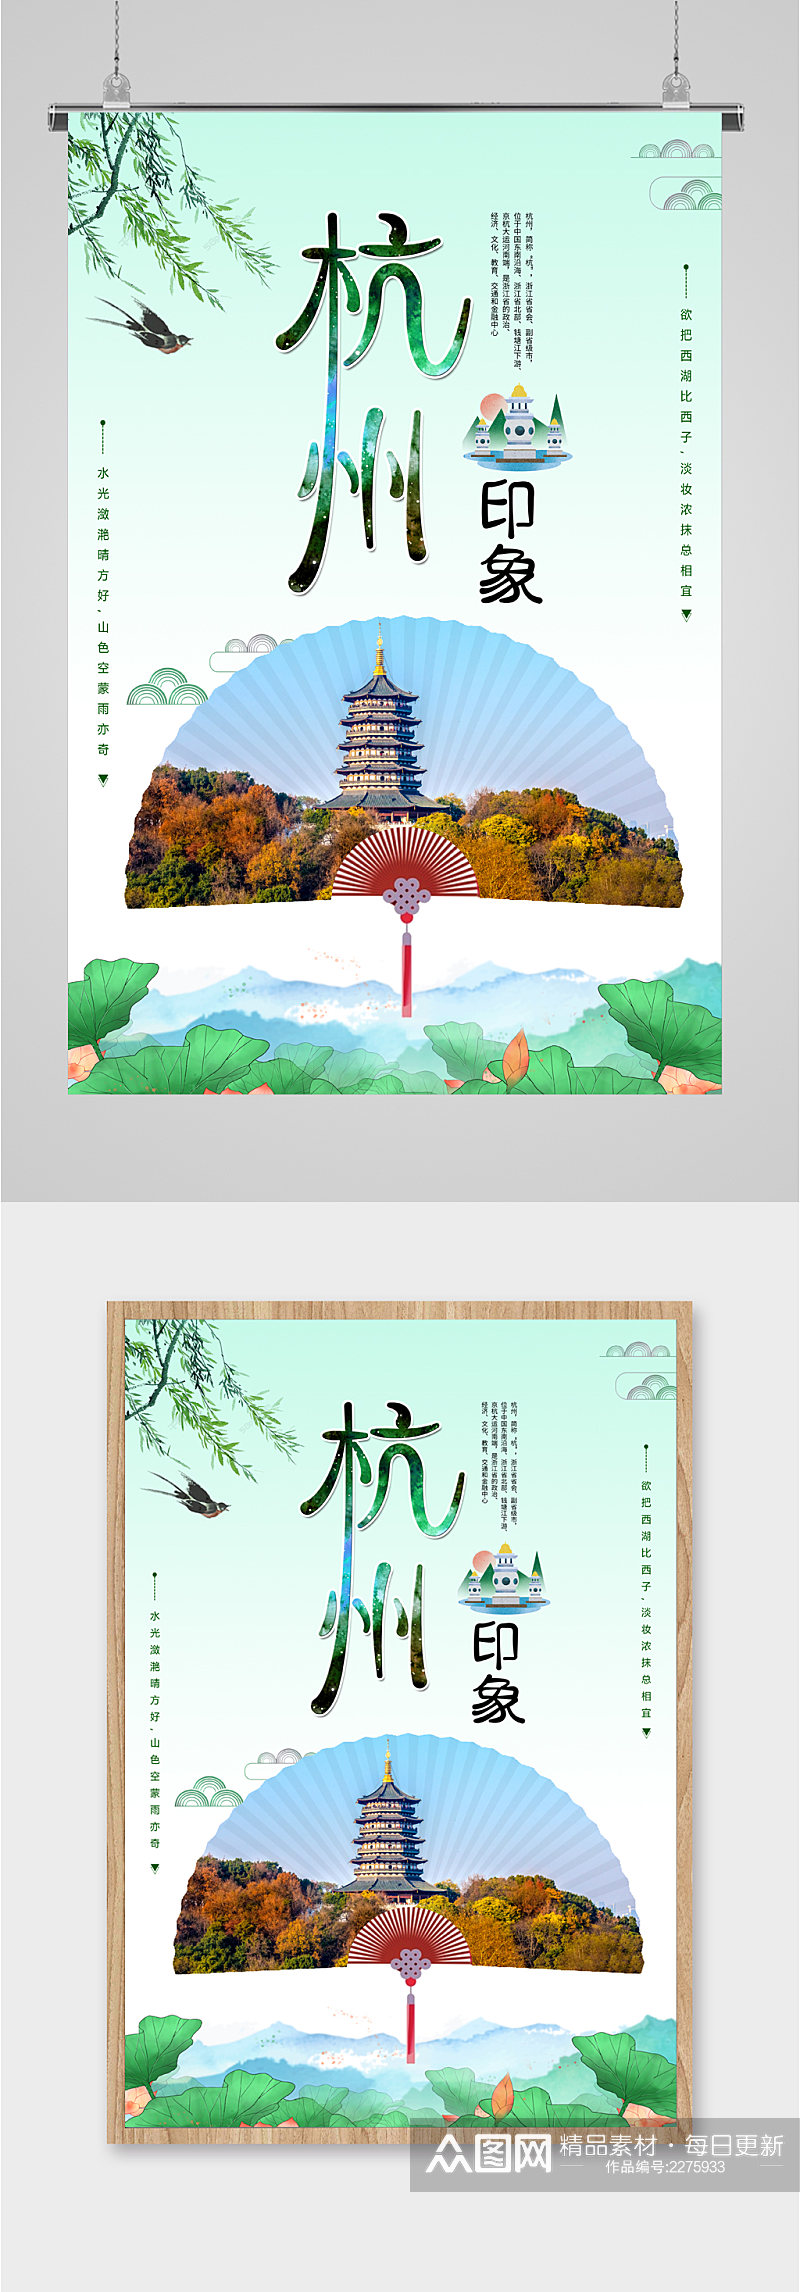 杭州印象风景海报素材